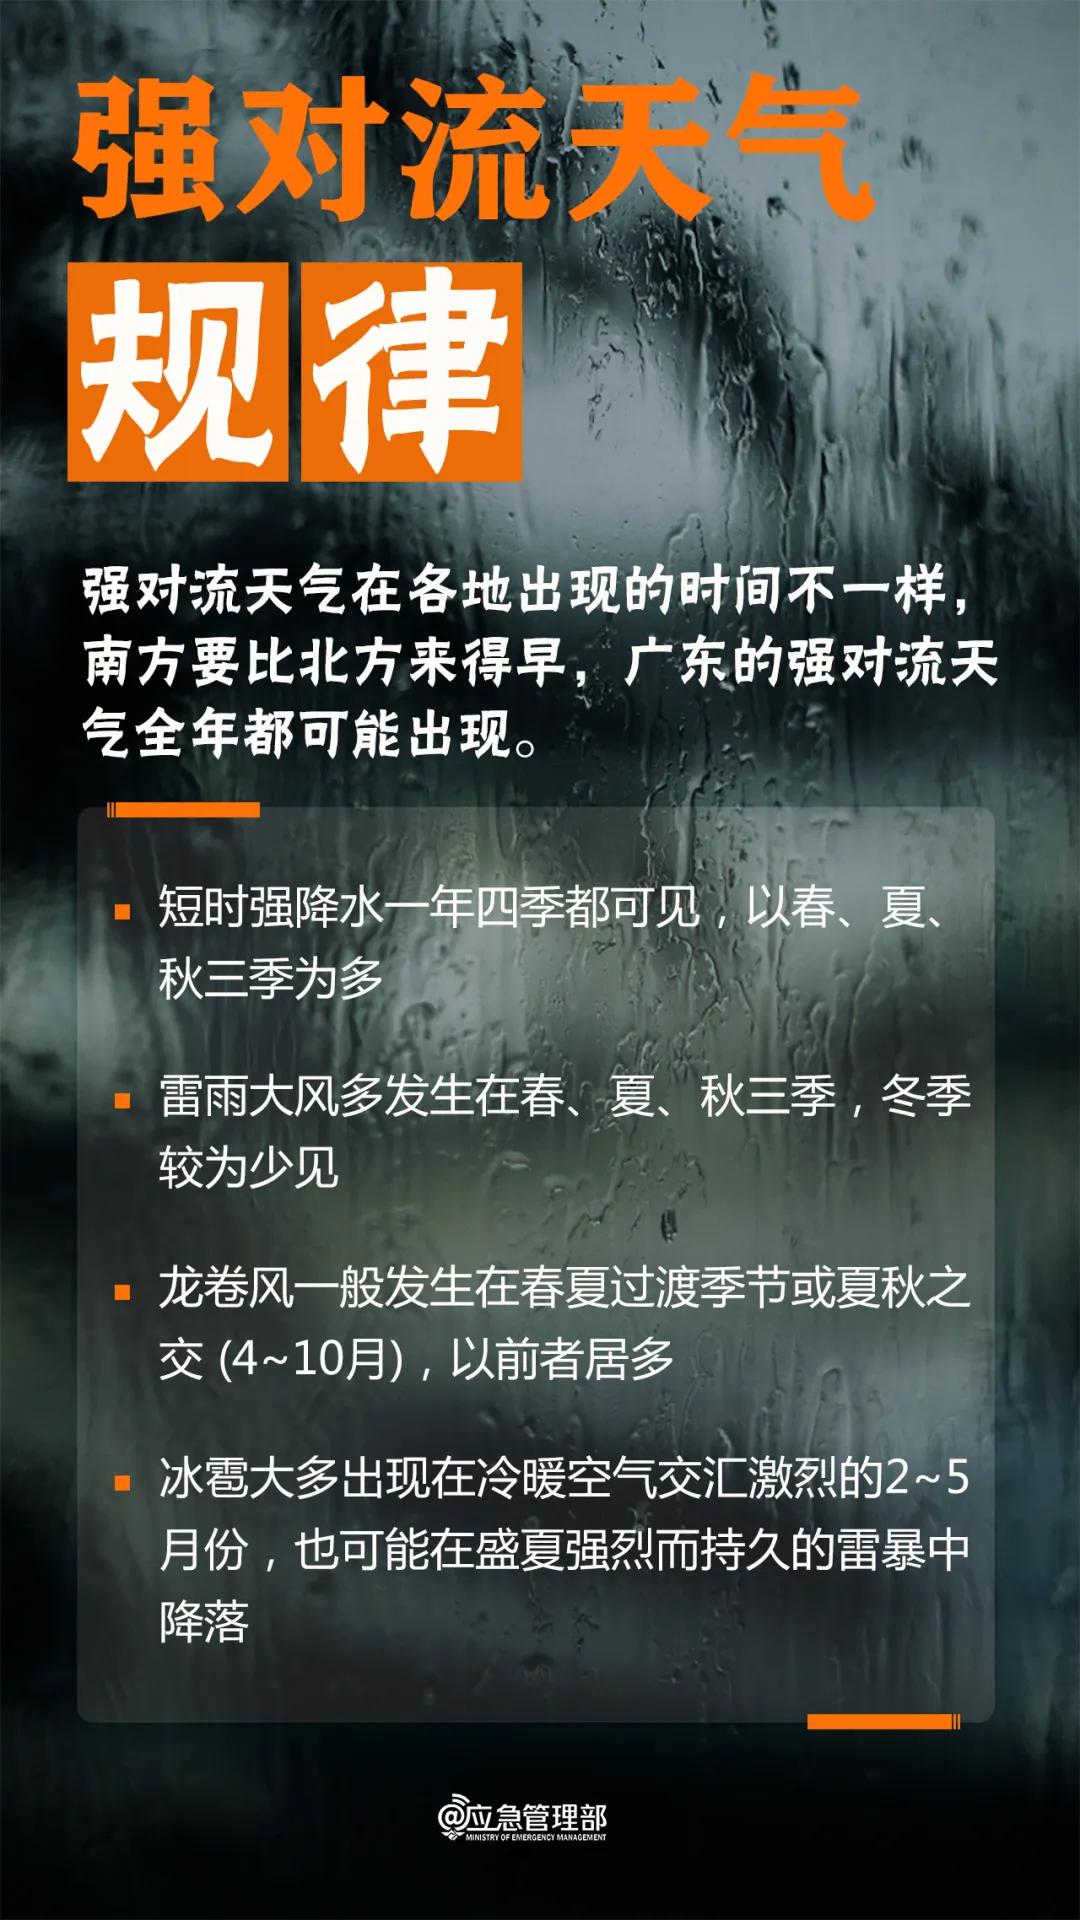 来源：湖南省气象台、应急管理部